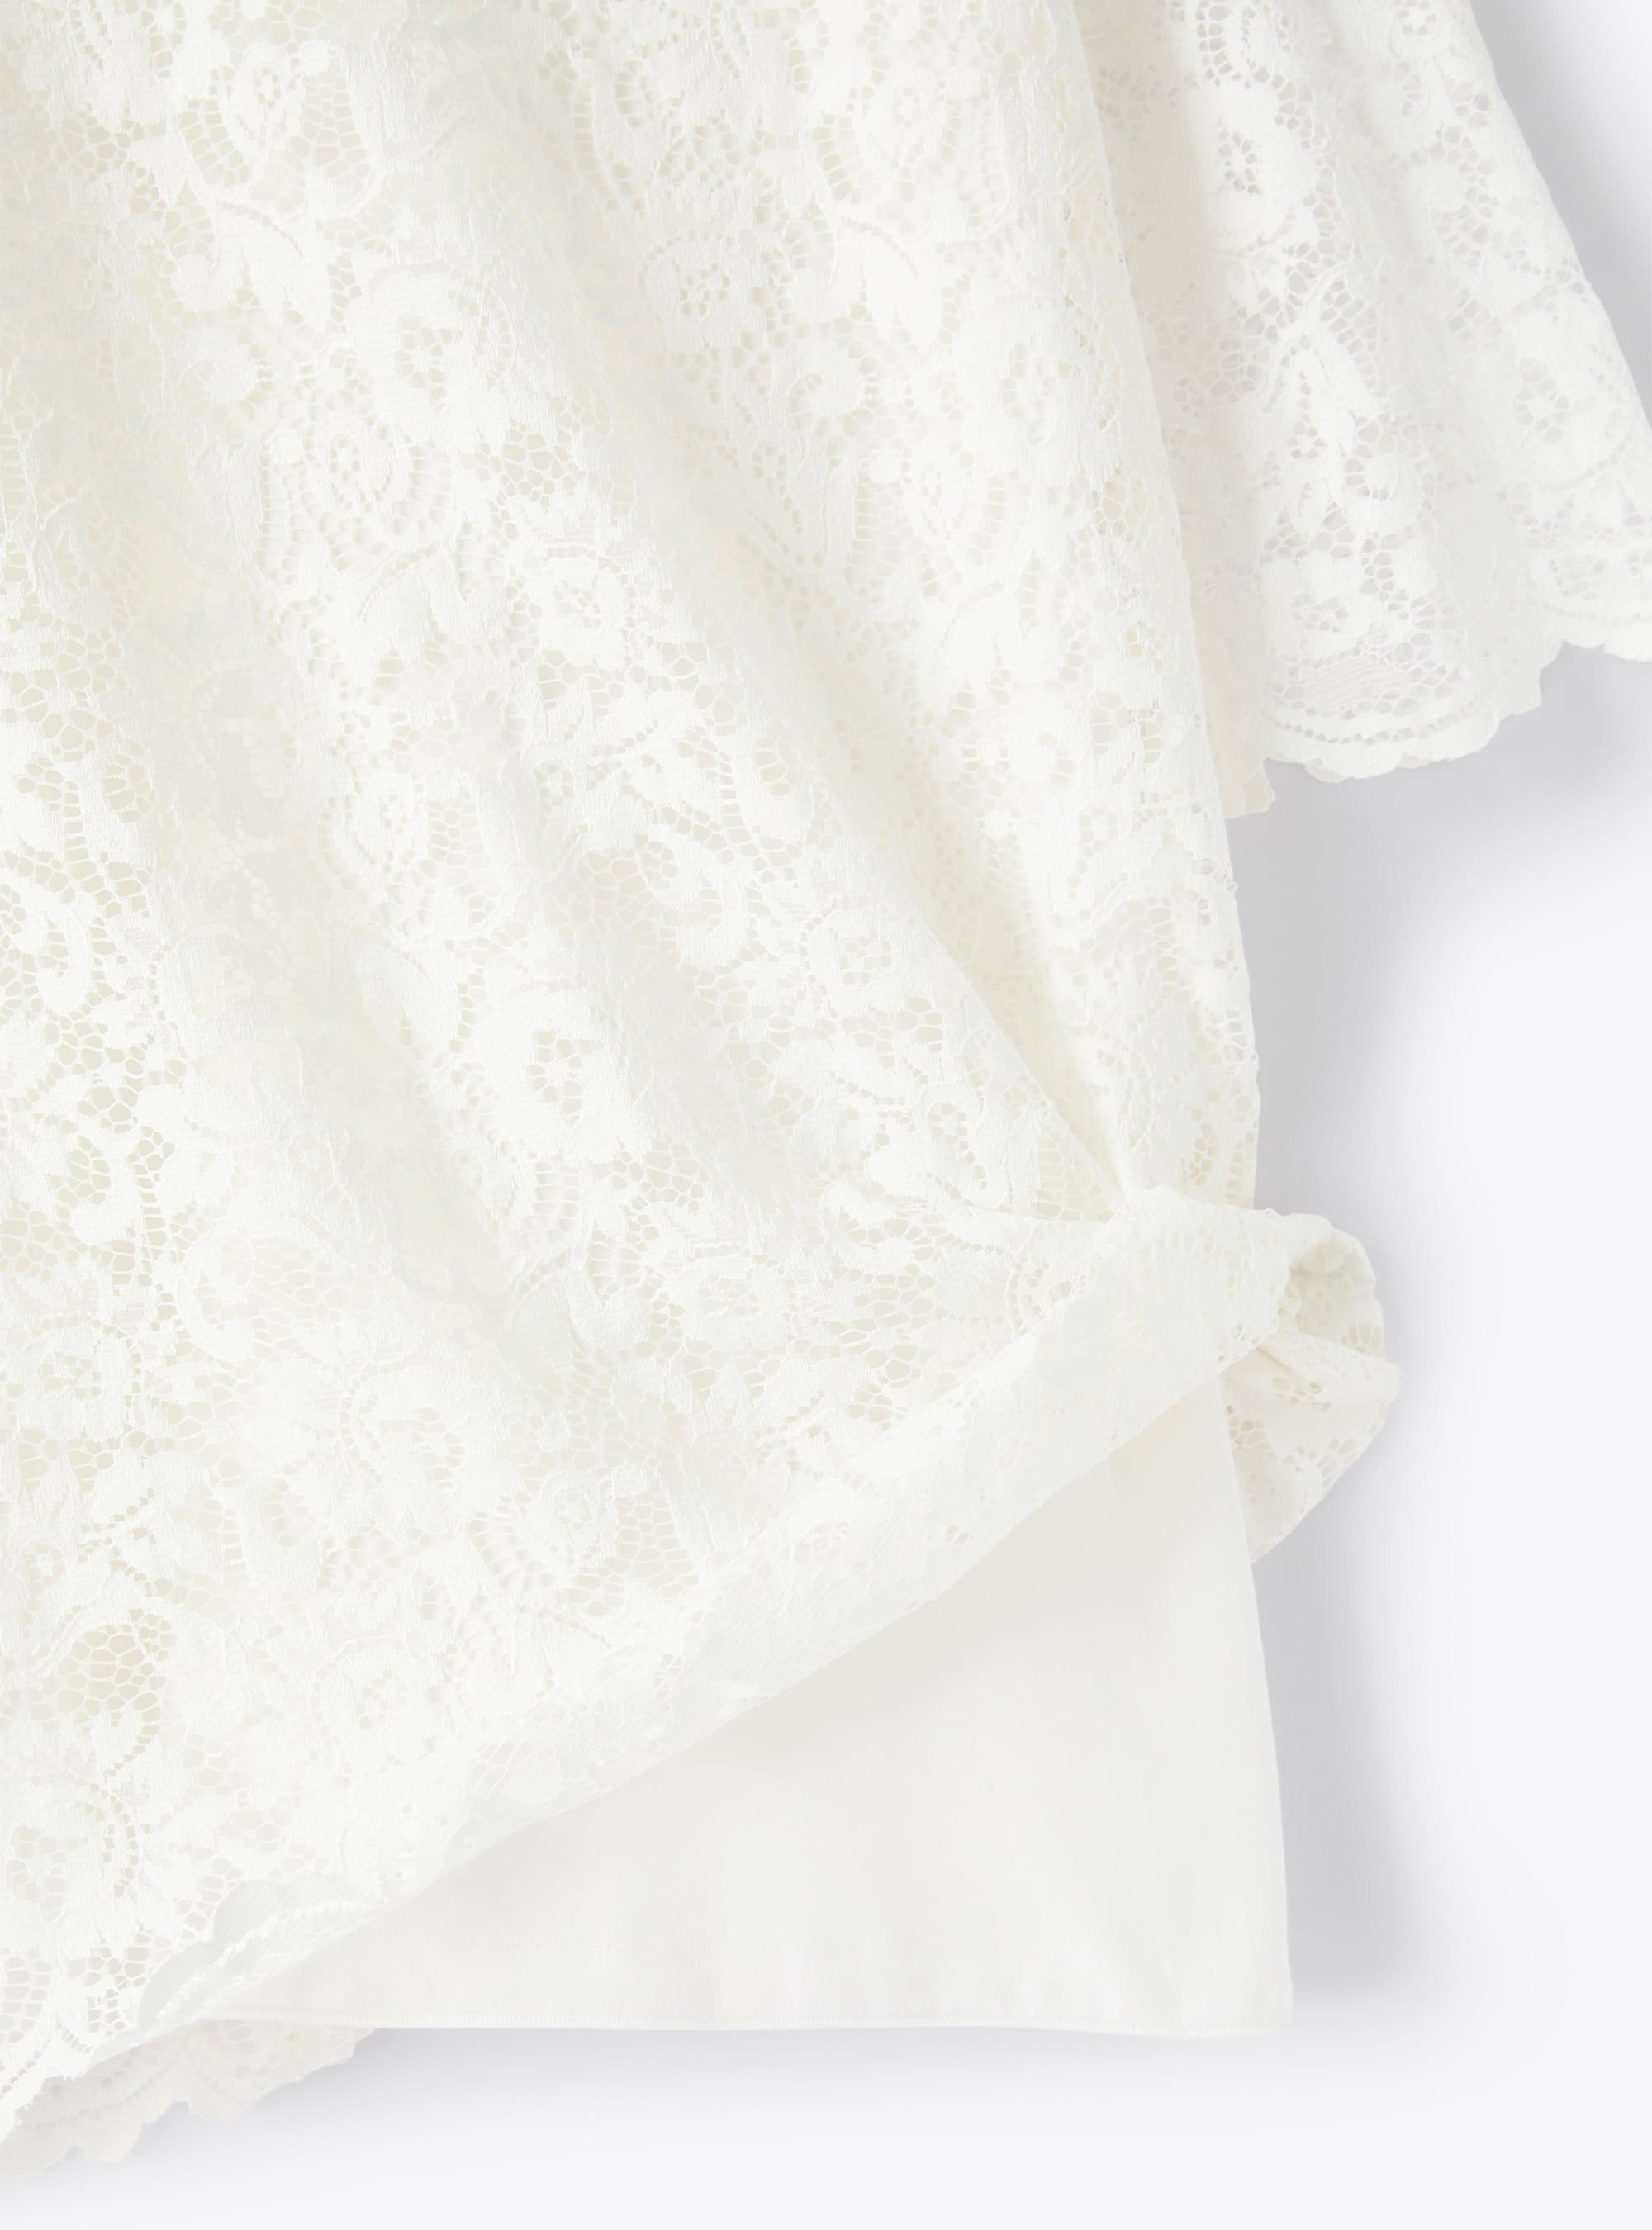 Short A-line dress in cotton lace - White | Il Gufo